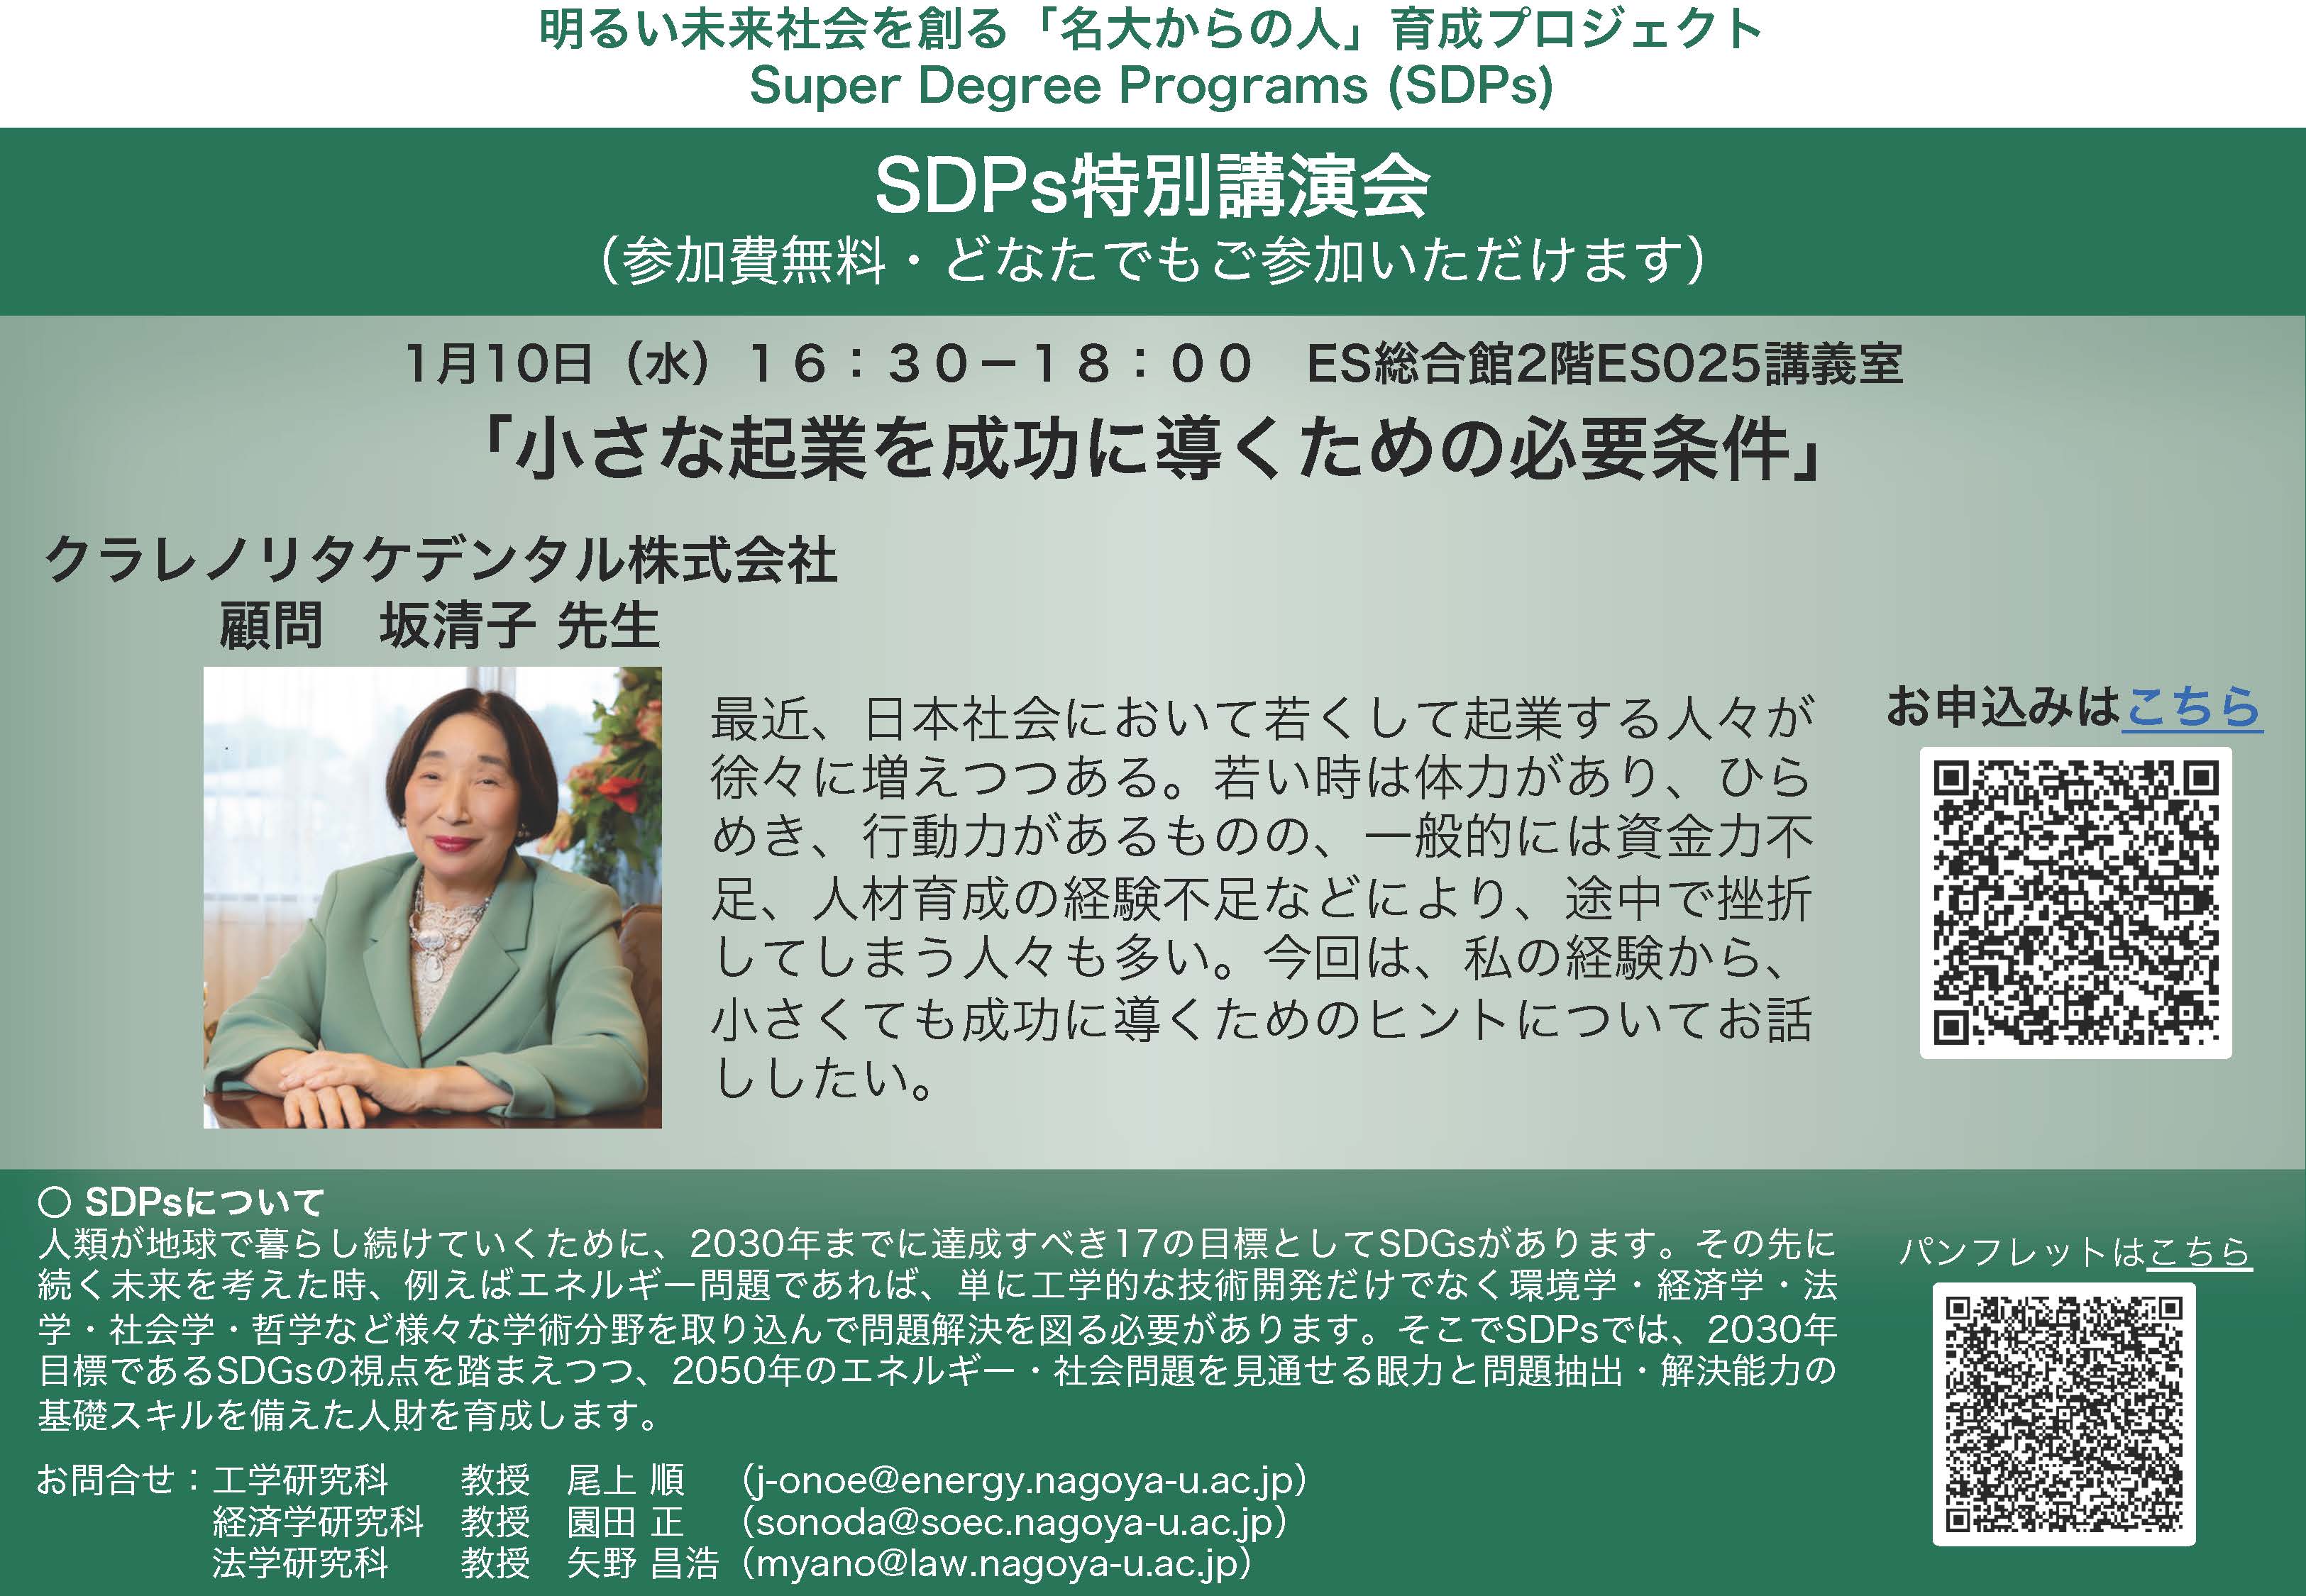 名古屋大学SDPs特別講演会「小さな起業を成功に導くための必要条件」